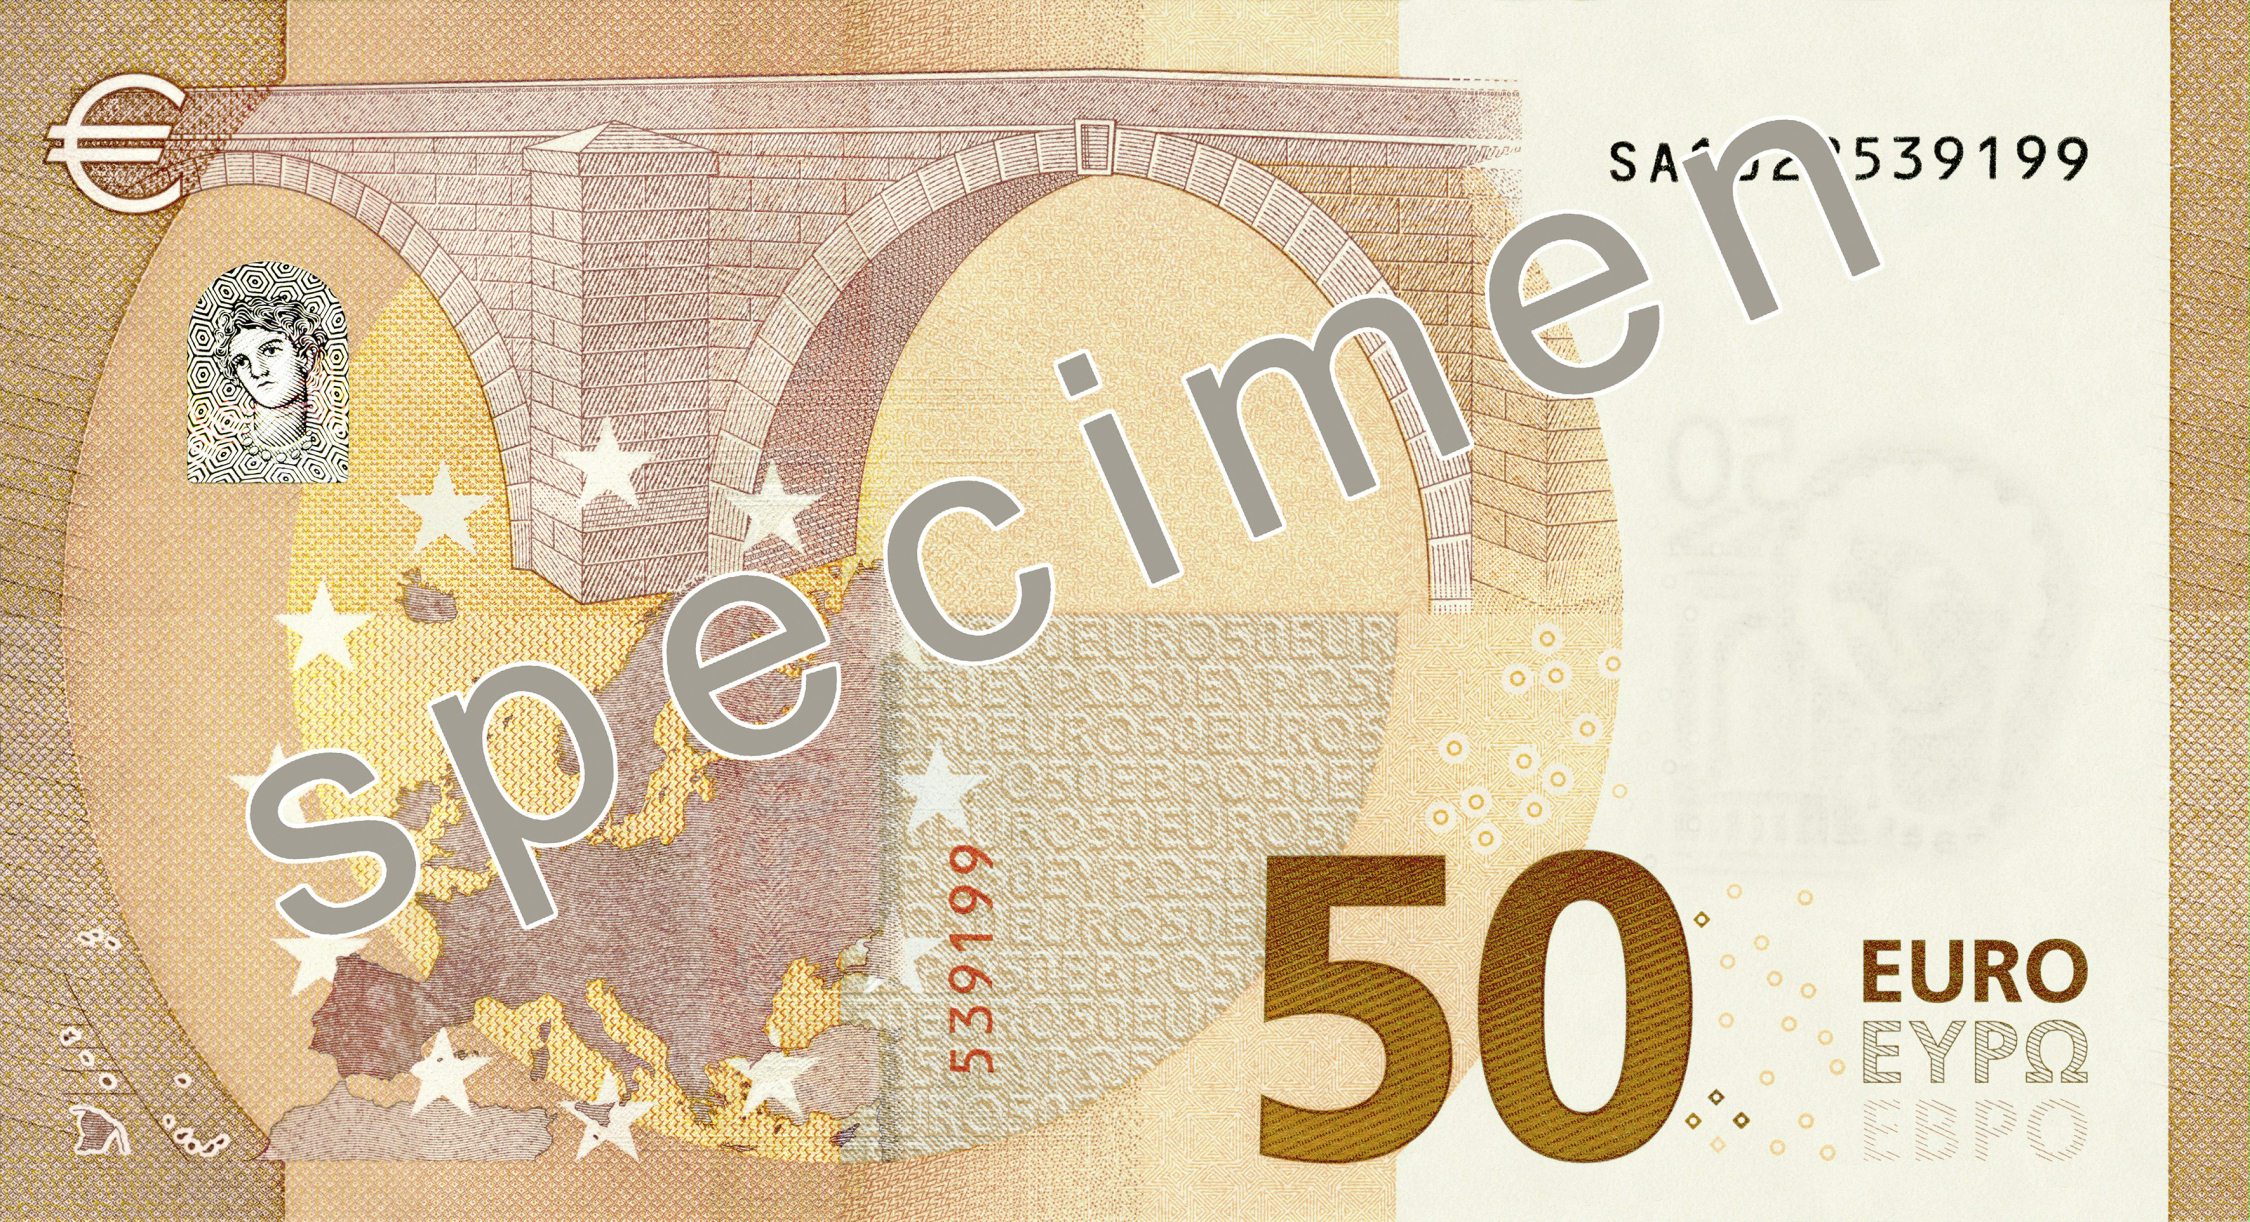 LKS 20160705 LKs 20160705 - Euroopan keskuspankki julkisti uuden 50 euron setelin ulkoasun 5. heinäkuuta 2016. LEHTIKUVA / HANDOUT / EUROOPAN KESKUSPANKKI